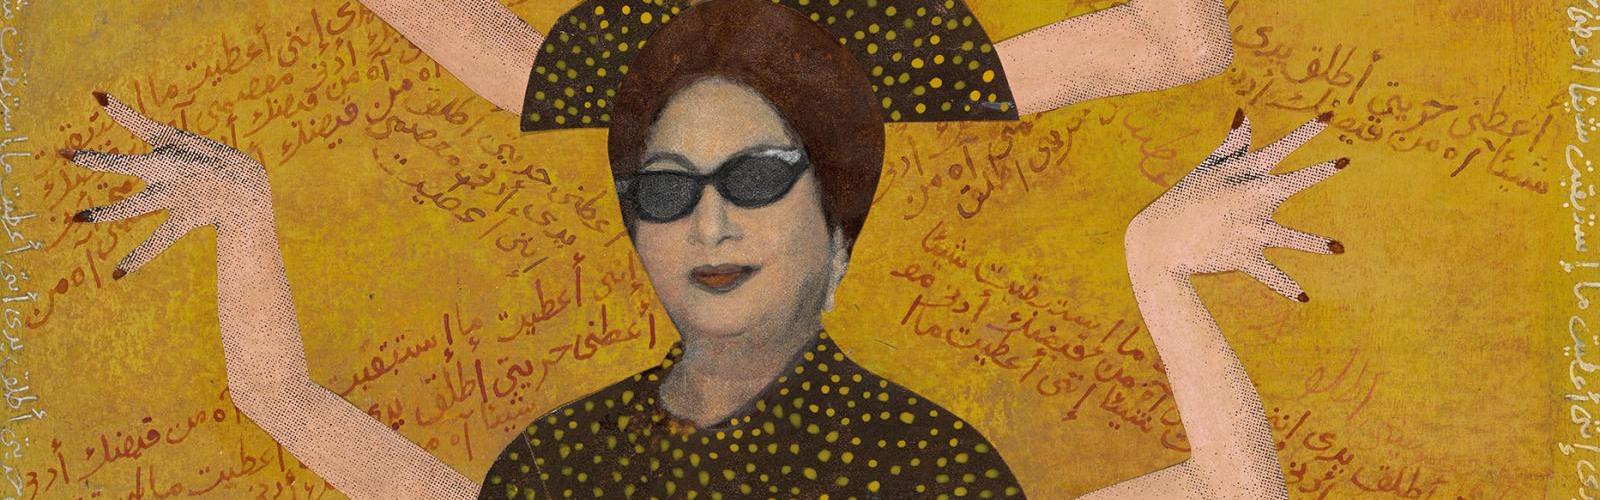 Spring in London - Al-Sitt and her Sunglasses by Huda Lutfi HERO CREDIT British Museum